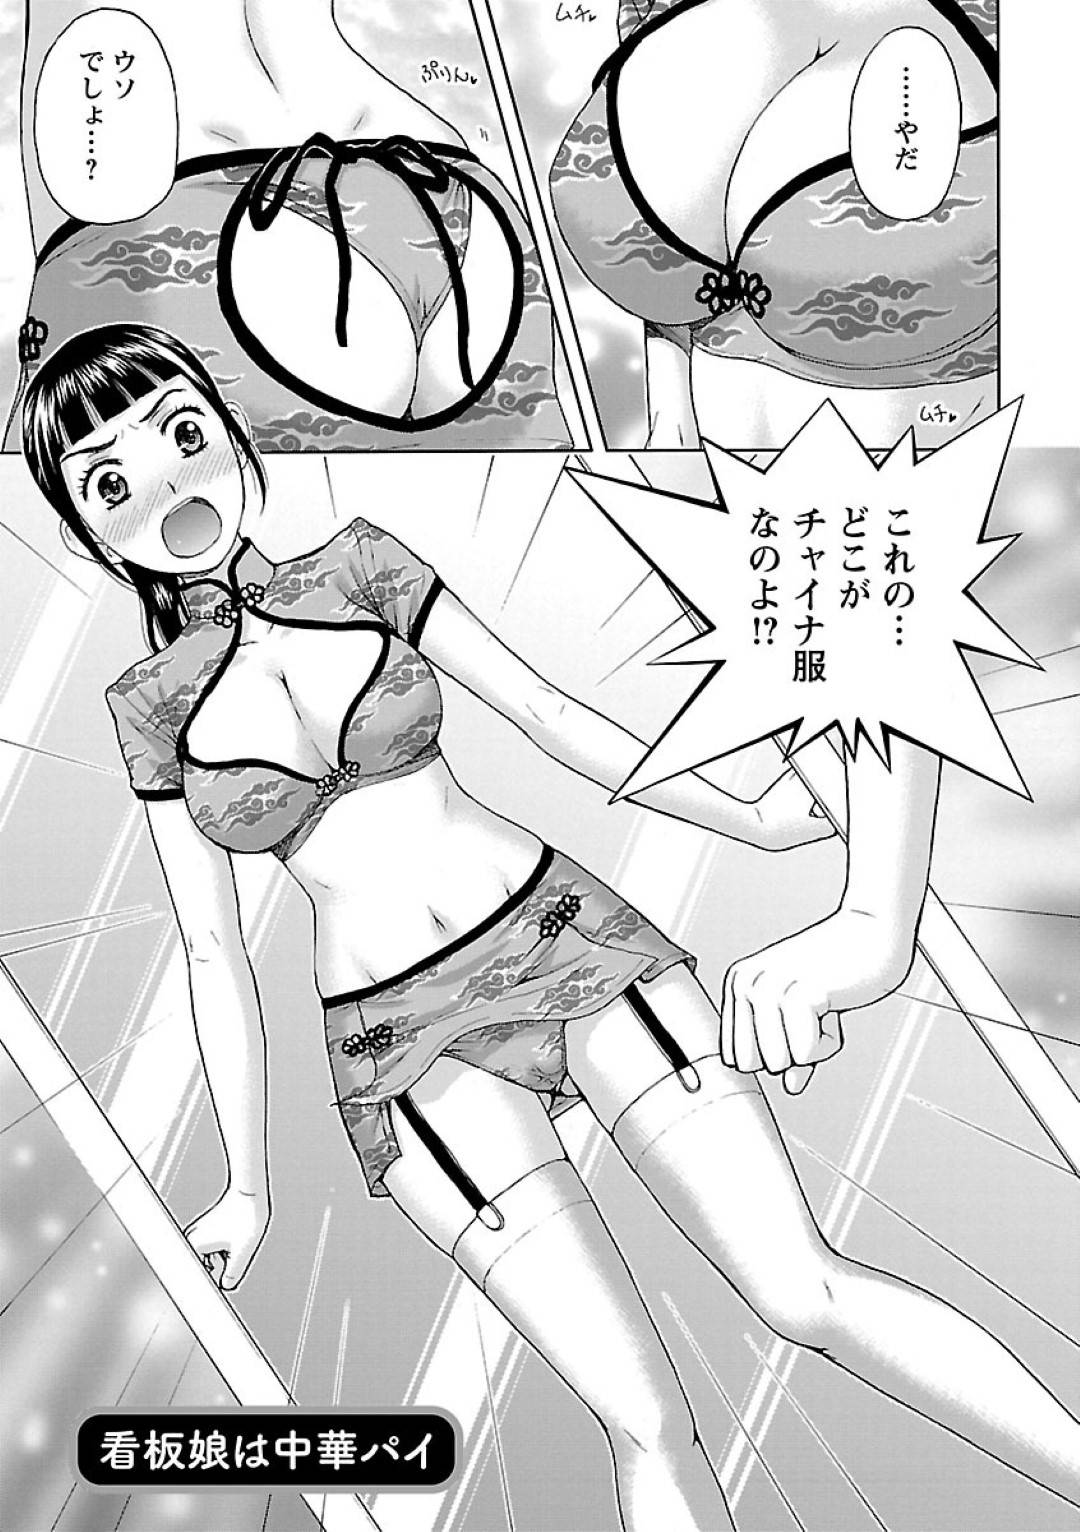 【エロ漫画】広告を出すためにエッチなチャイナドレスを着る事となった中華料理店の看板娘…幼馴染が写真を撮る事となるが、彼女のチャイナドレス姿についつい勃起してしまい、そのままセックスする流れになってしまう。【ヒヤマシュリ:看板娘は中華パイ】